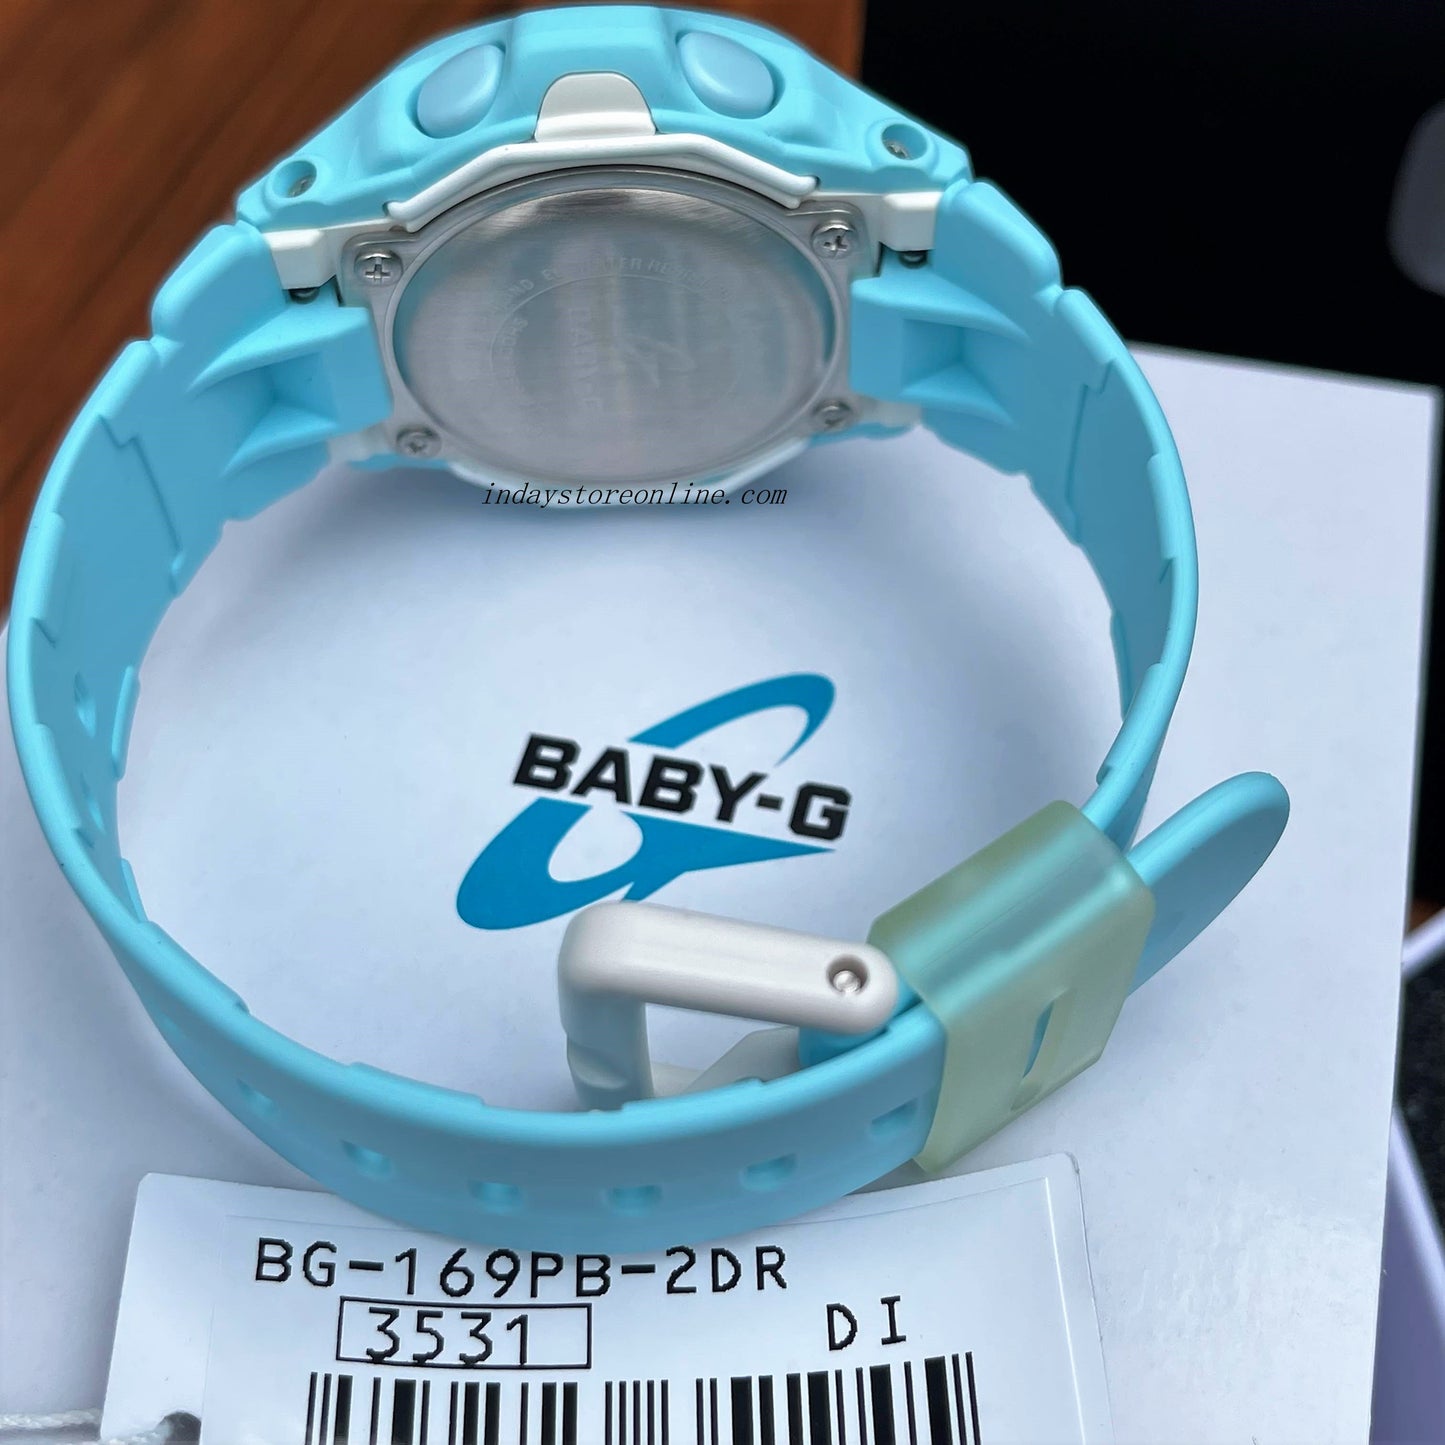 Casio Baby-G Women's Watch BG-169PB-2